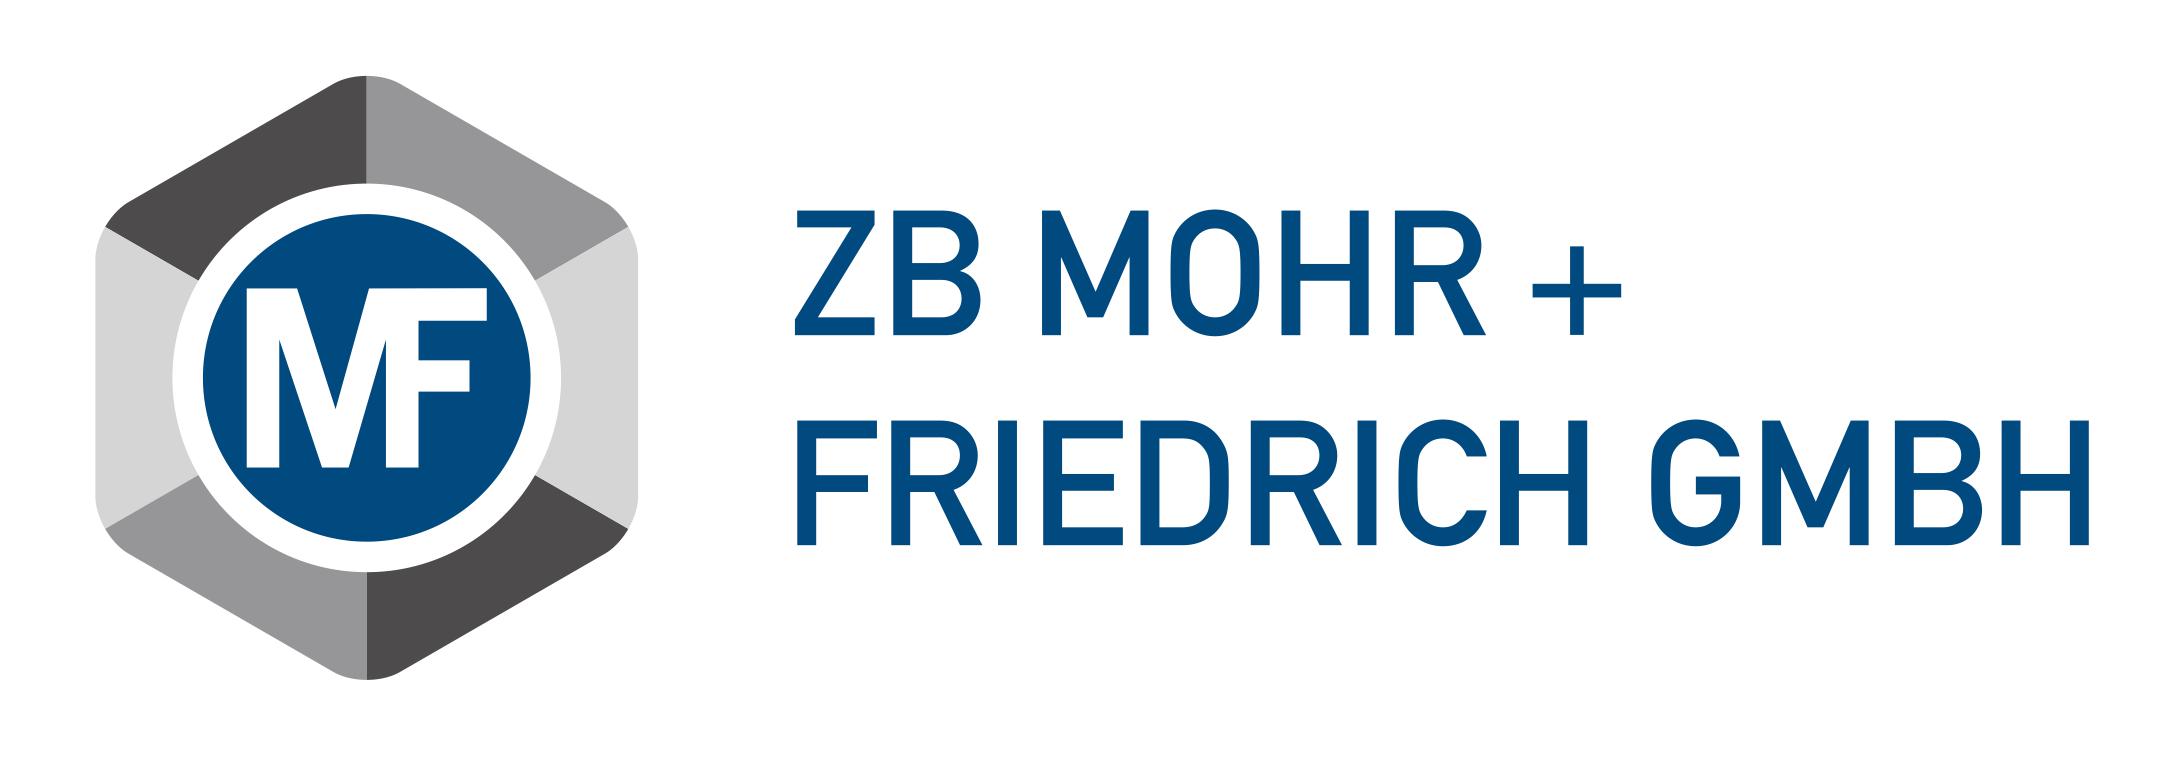 logo-zb-mf-1